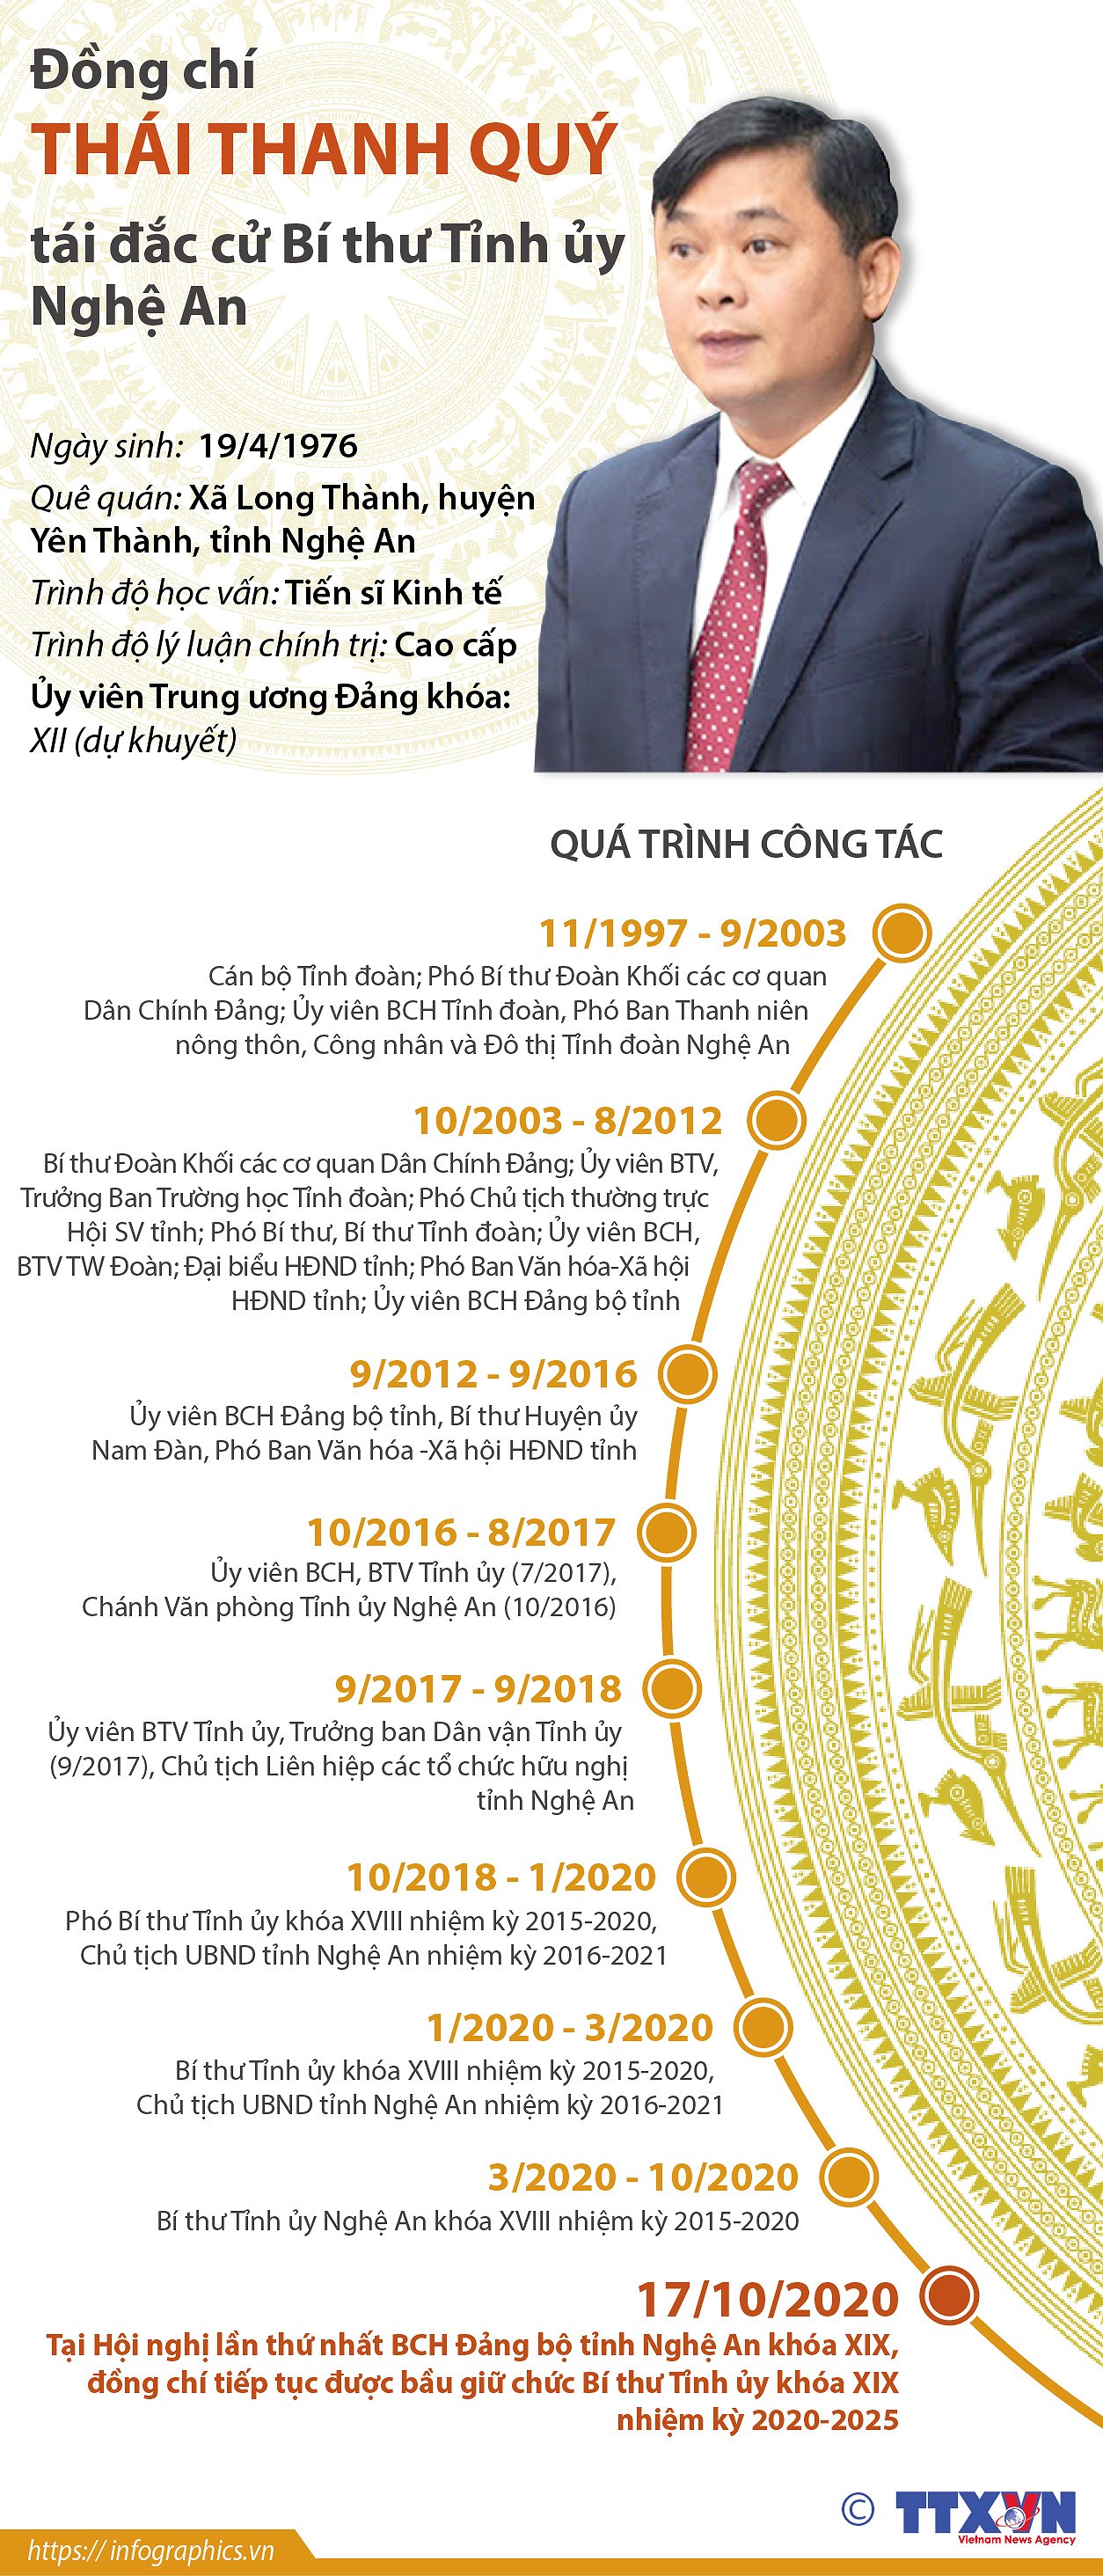 [Infographics] Ong Thai Thanh Quy tai dac cu Bi thu Tinh uy Nghe An hinh anh 1